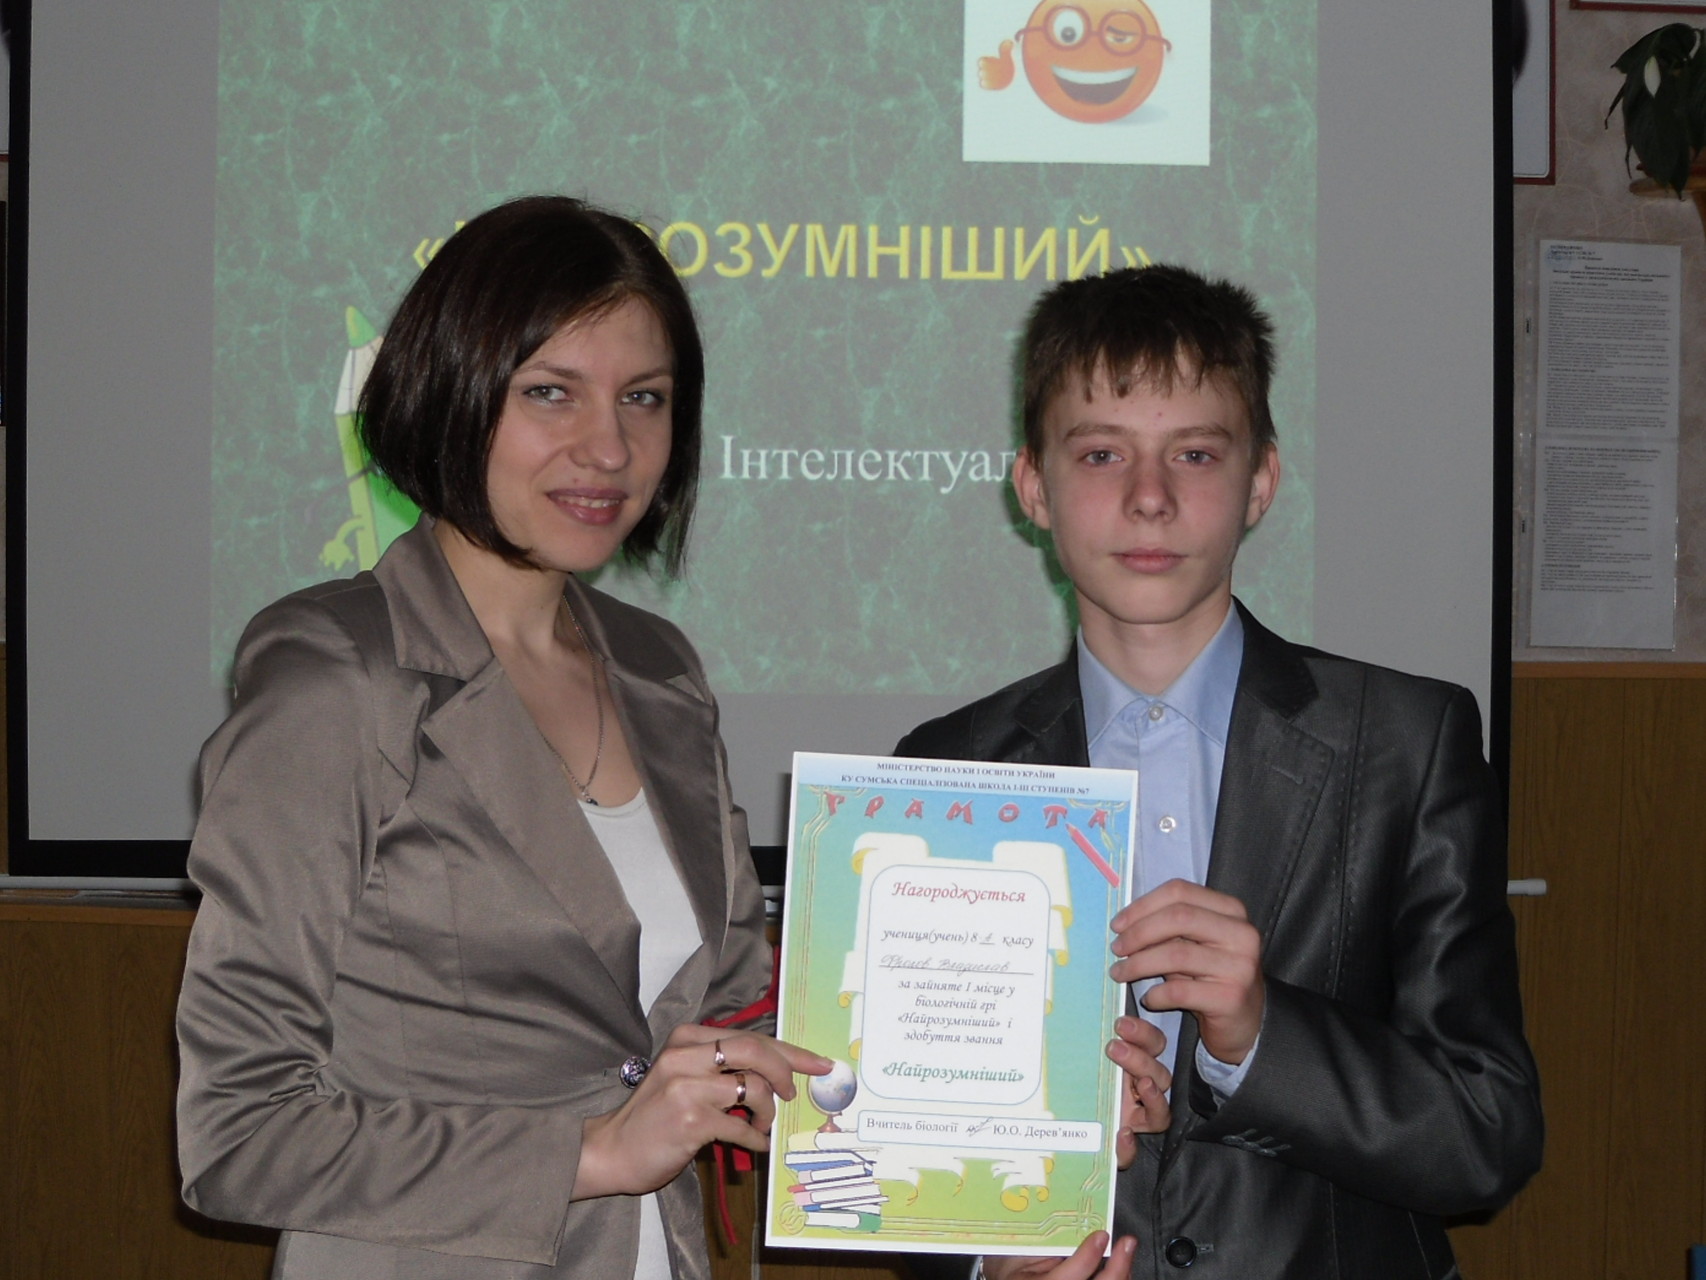 Переможець гри "Найрозумніший" - Фролов Владислав